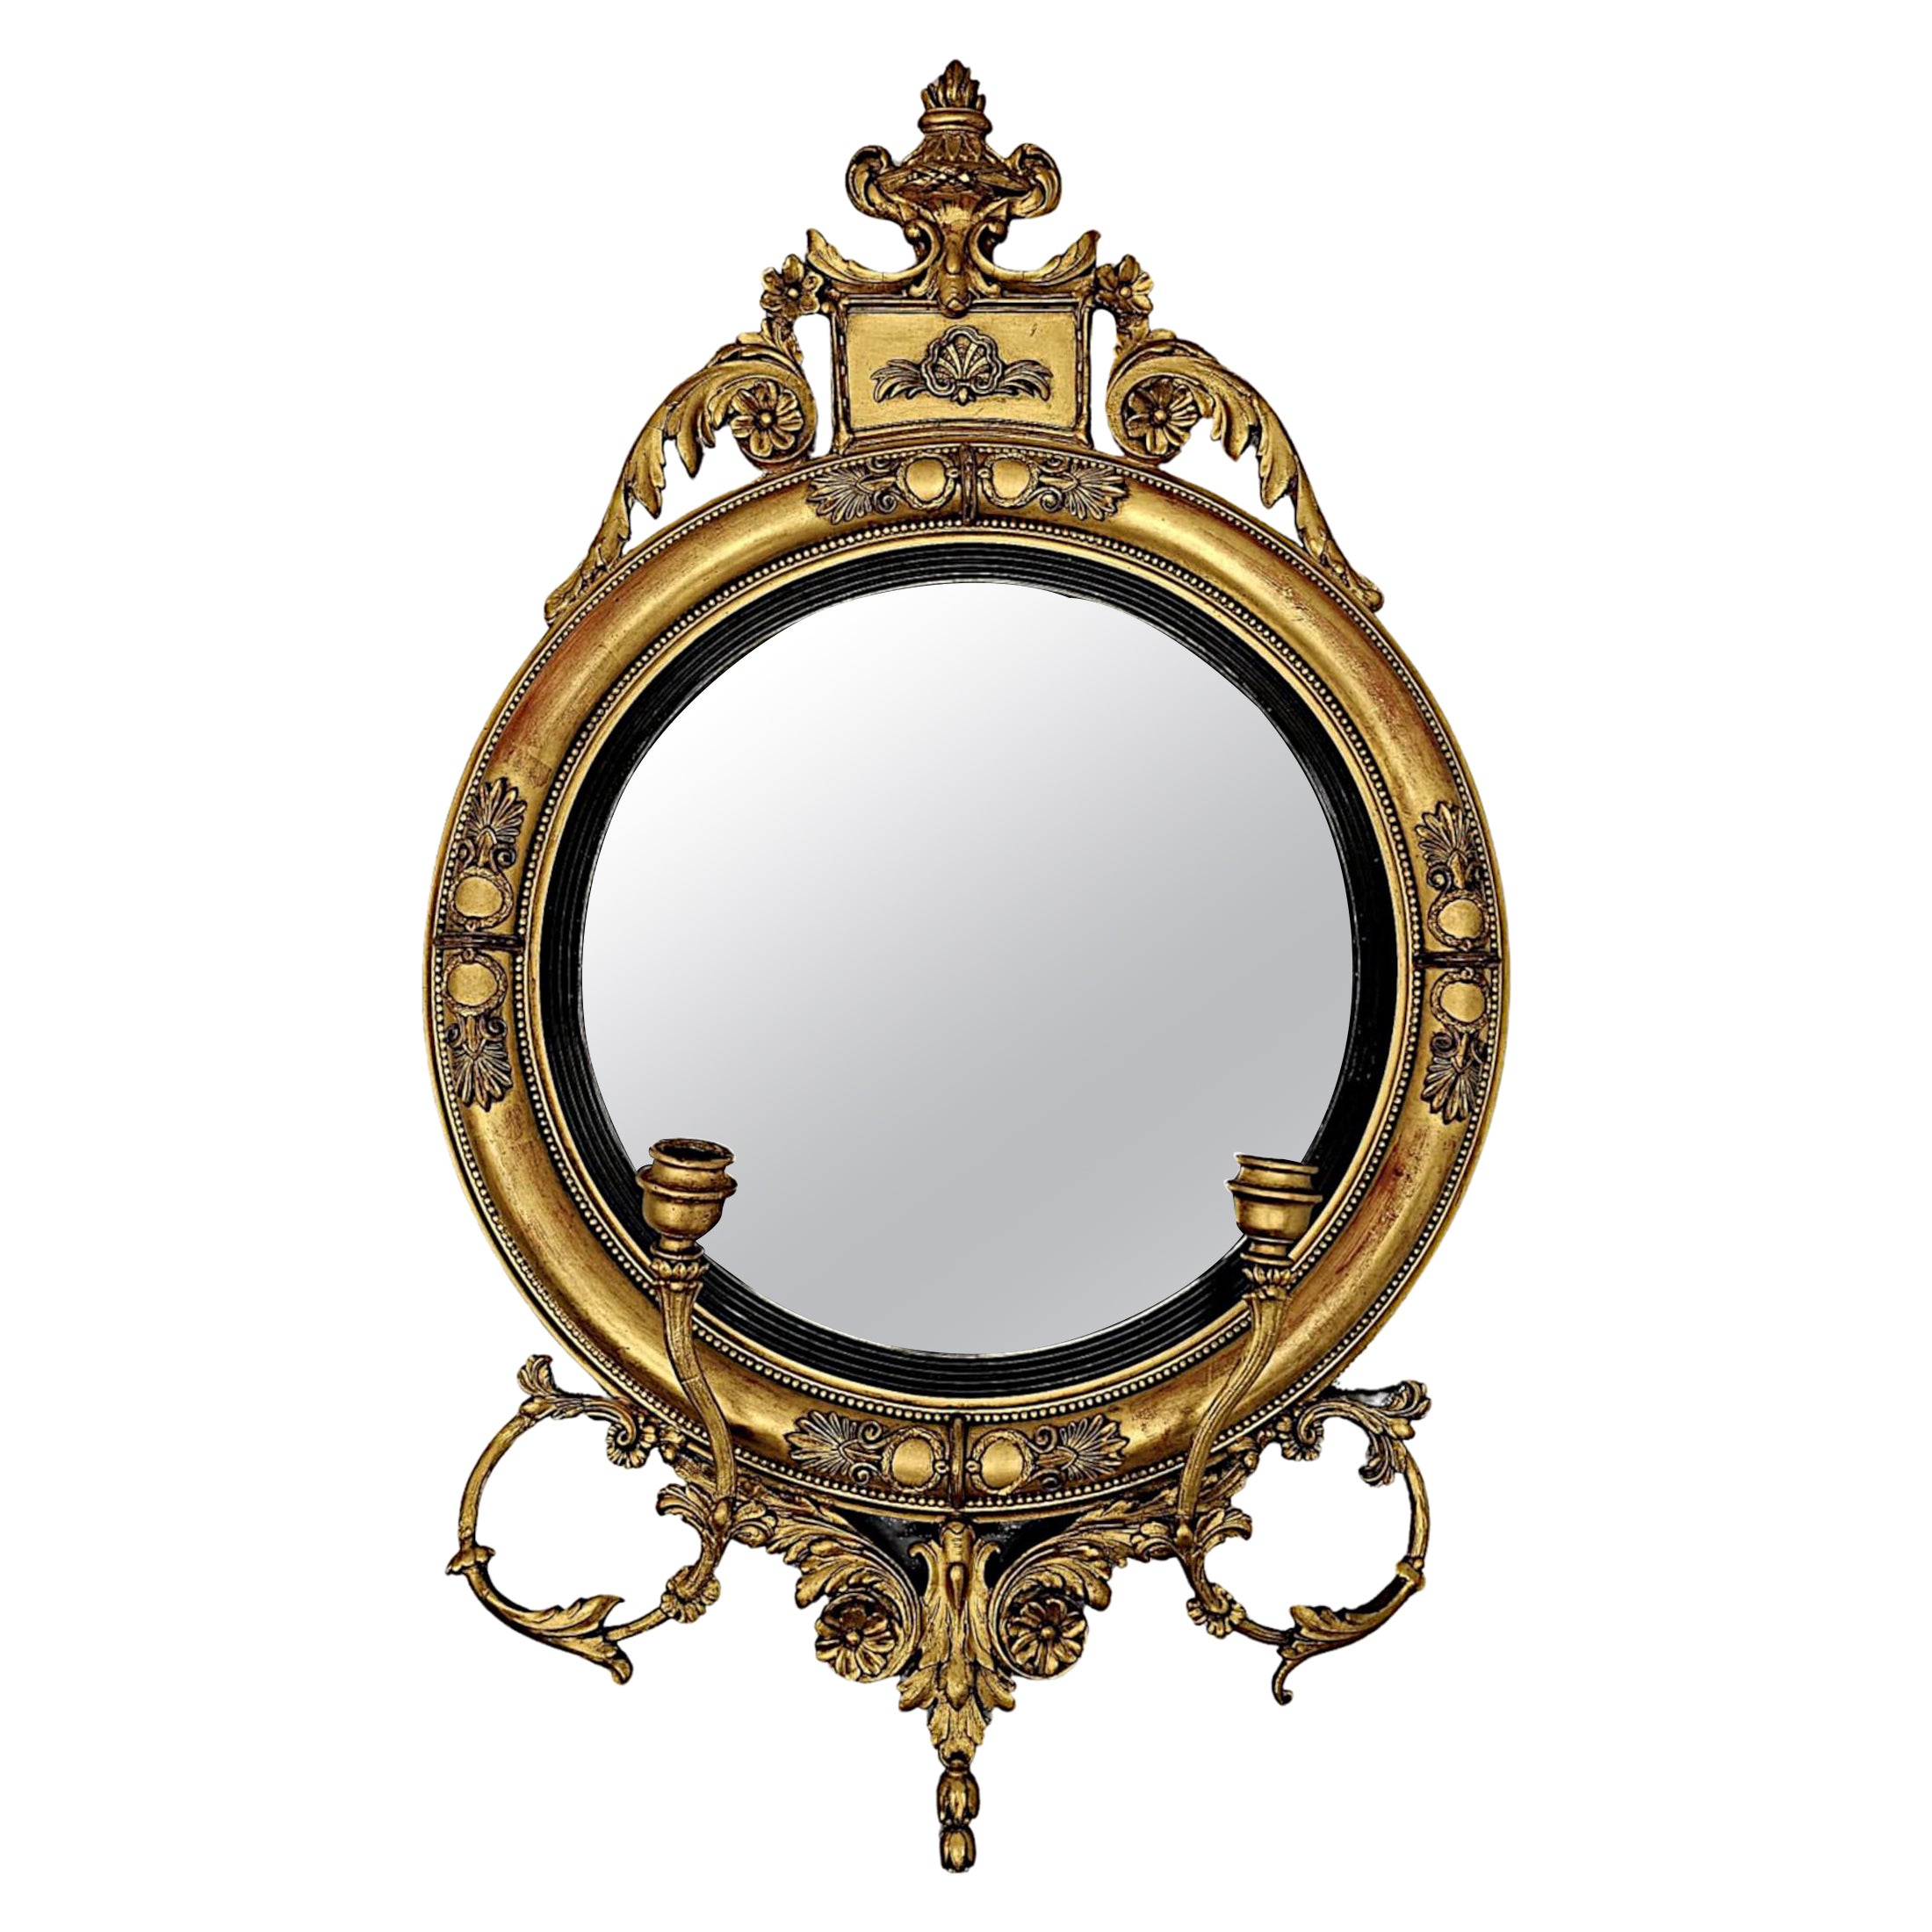  Très rare et beau miroir de hall ou d'embarcadère en bois doré du 19e siècle